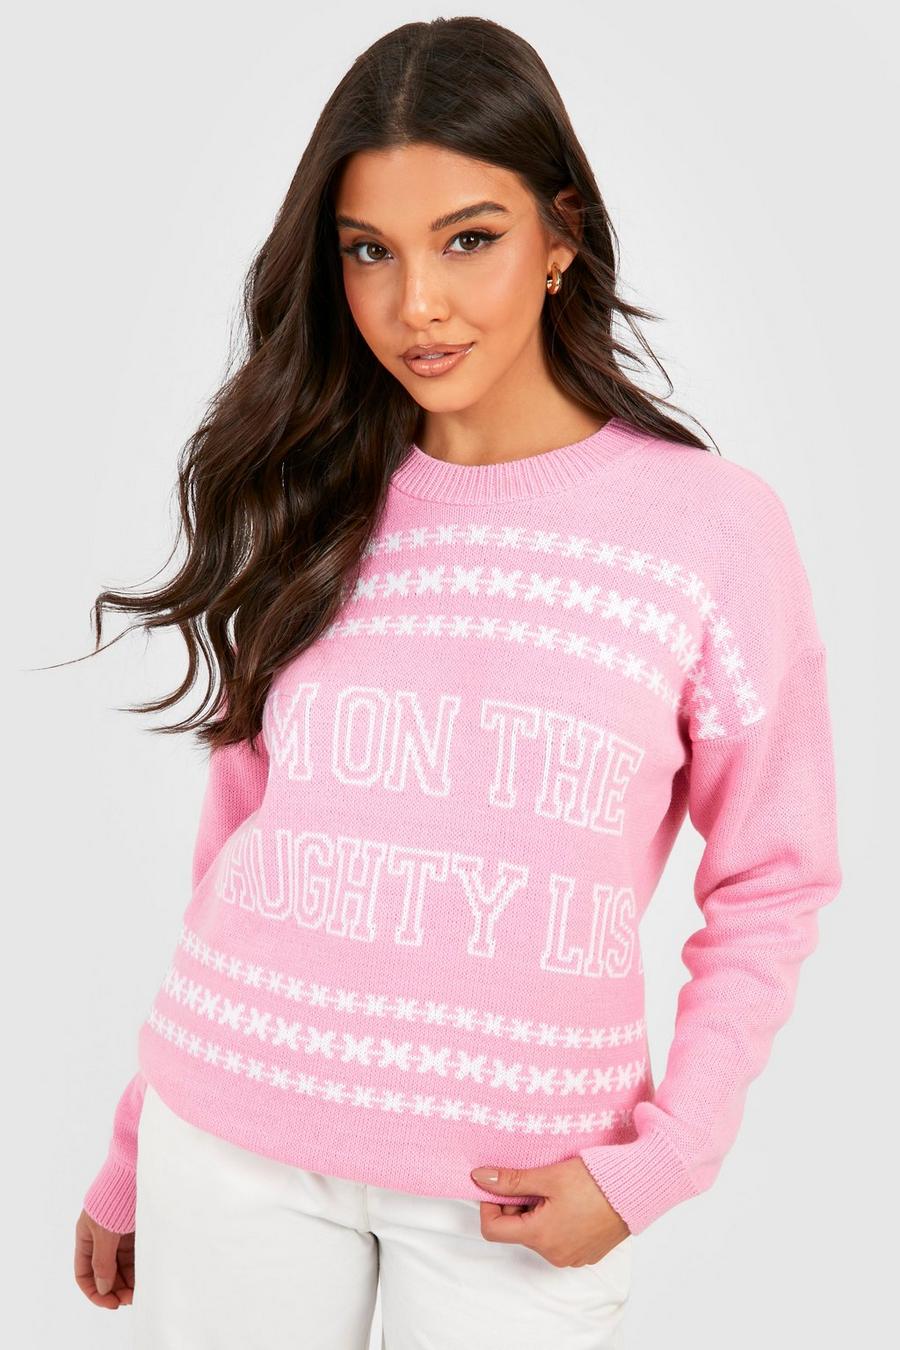 Maglione di Natale con slogan Naughty List, Baby pink rosa